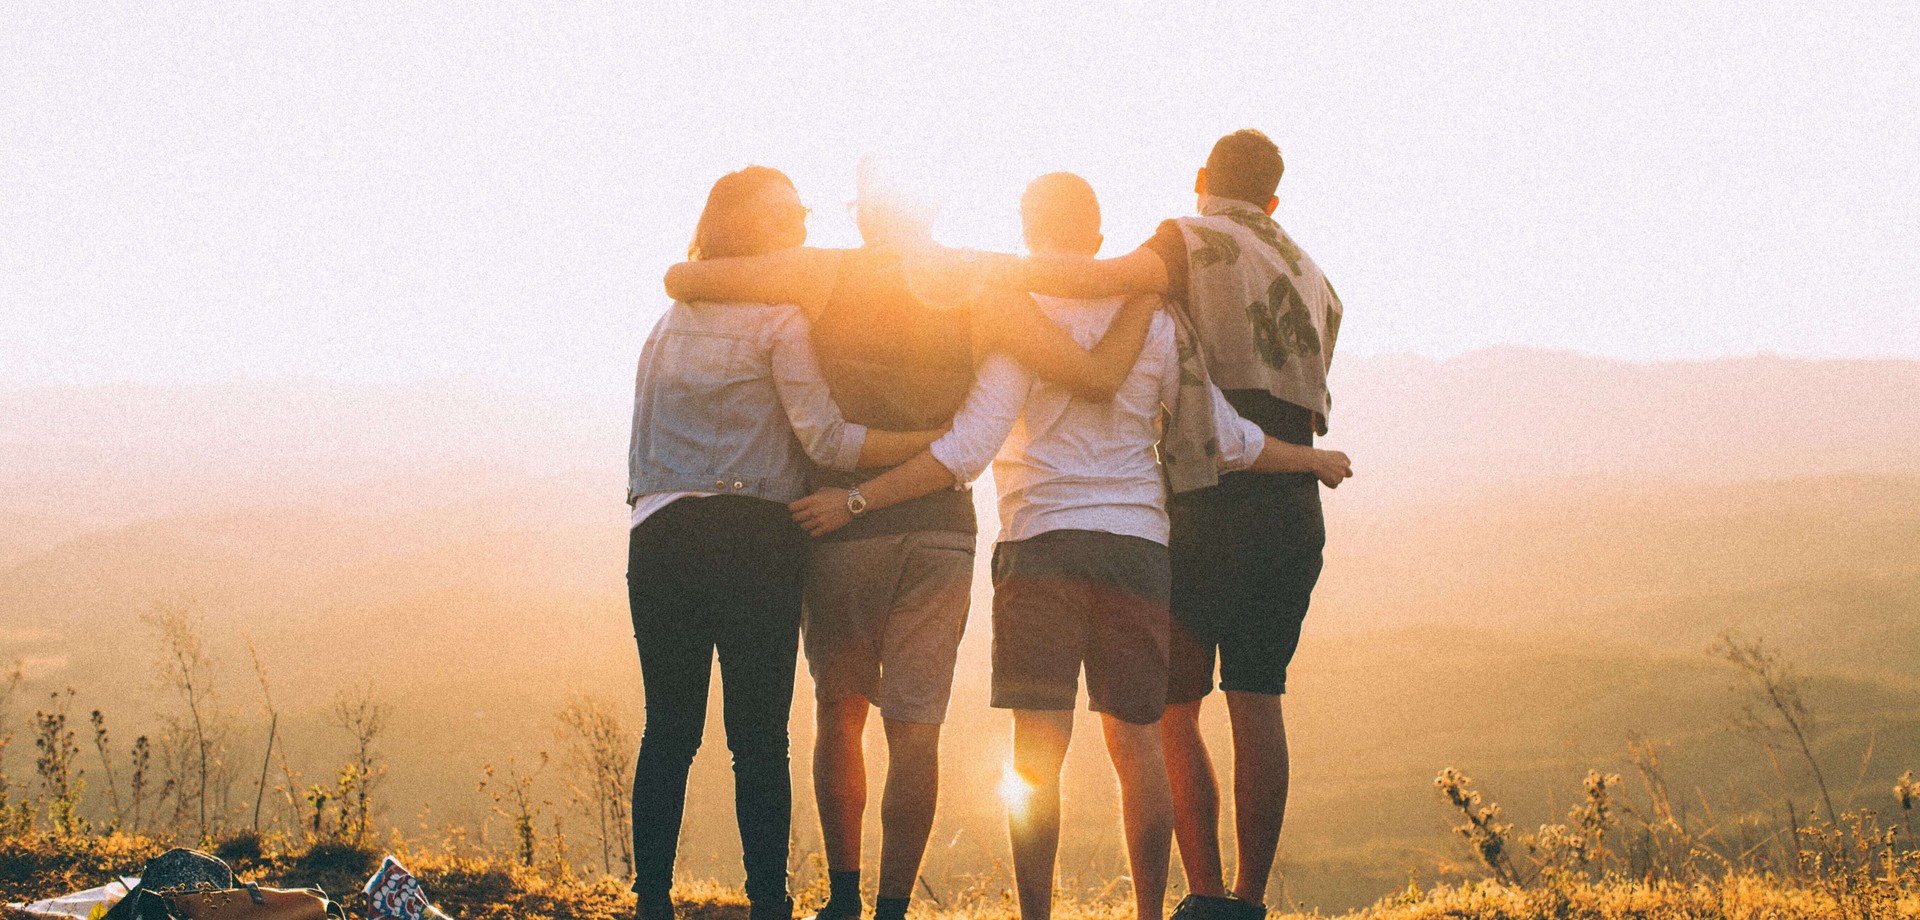 Das Bild zeigt vier junge Menschen, die auf einem Berg stehen und mit dem Rücken zum Betrachtenden Arm in Arm in die Sonne schauen. ©Pexels / Helena